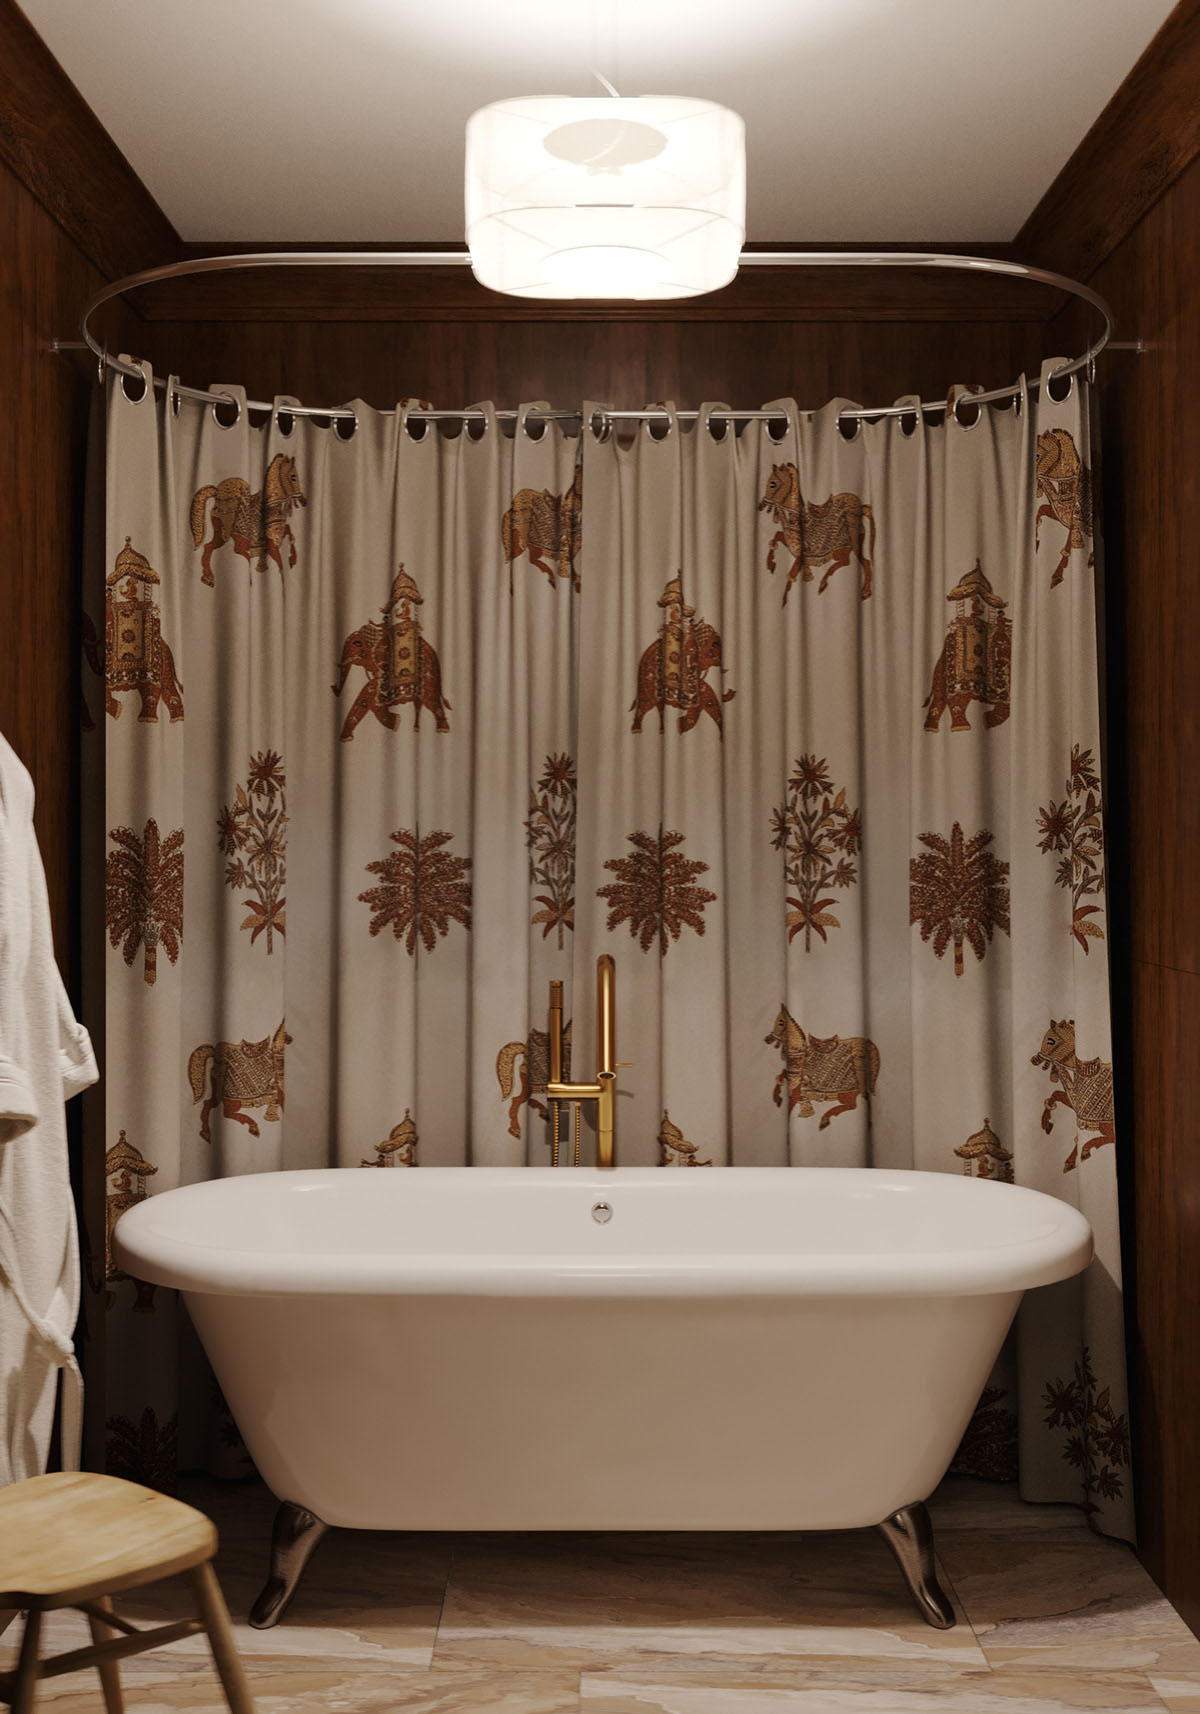 traditional style bathtub